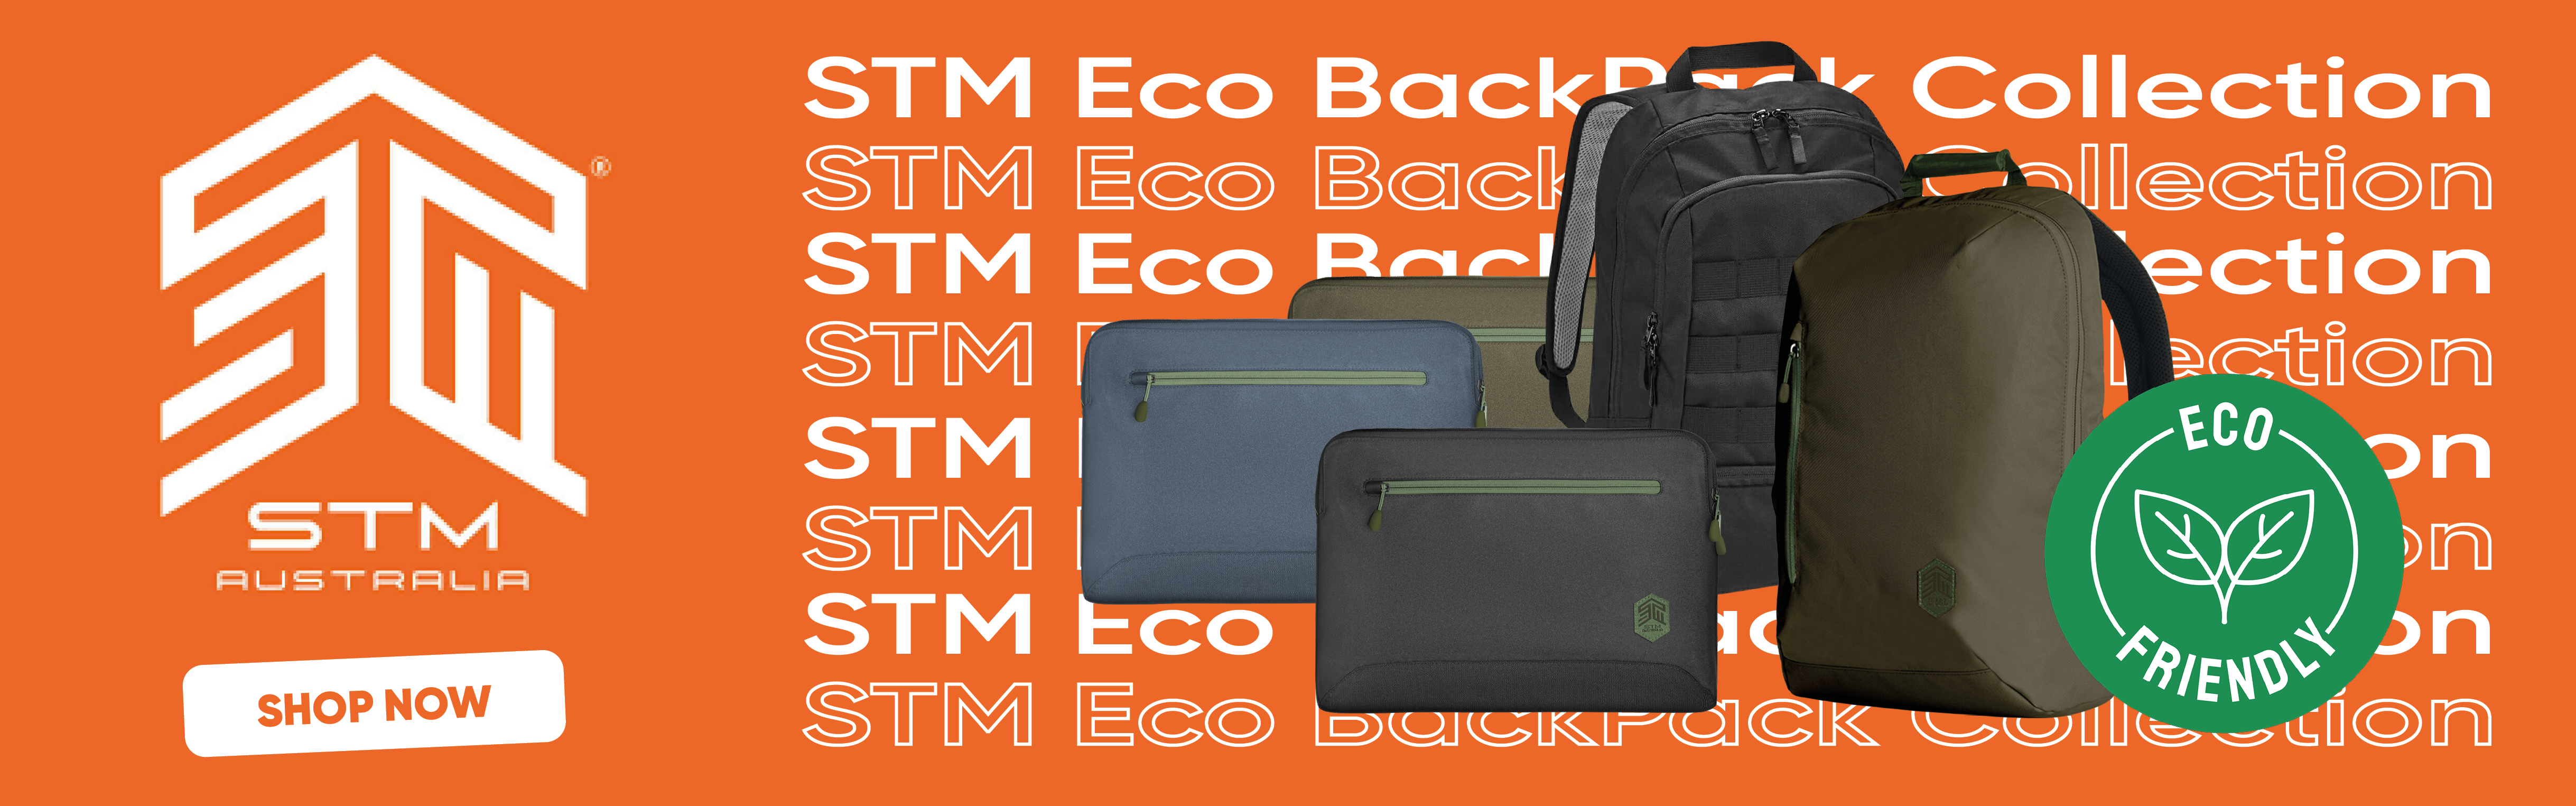 Stm ecoback pack banner